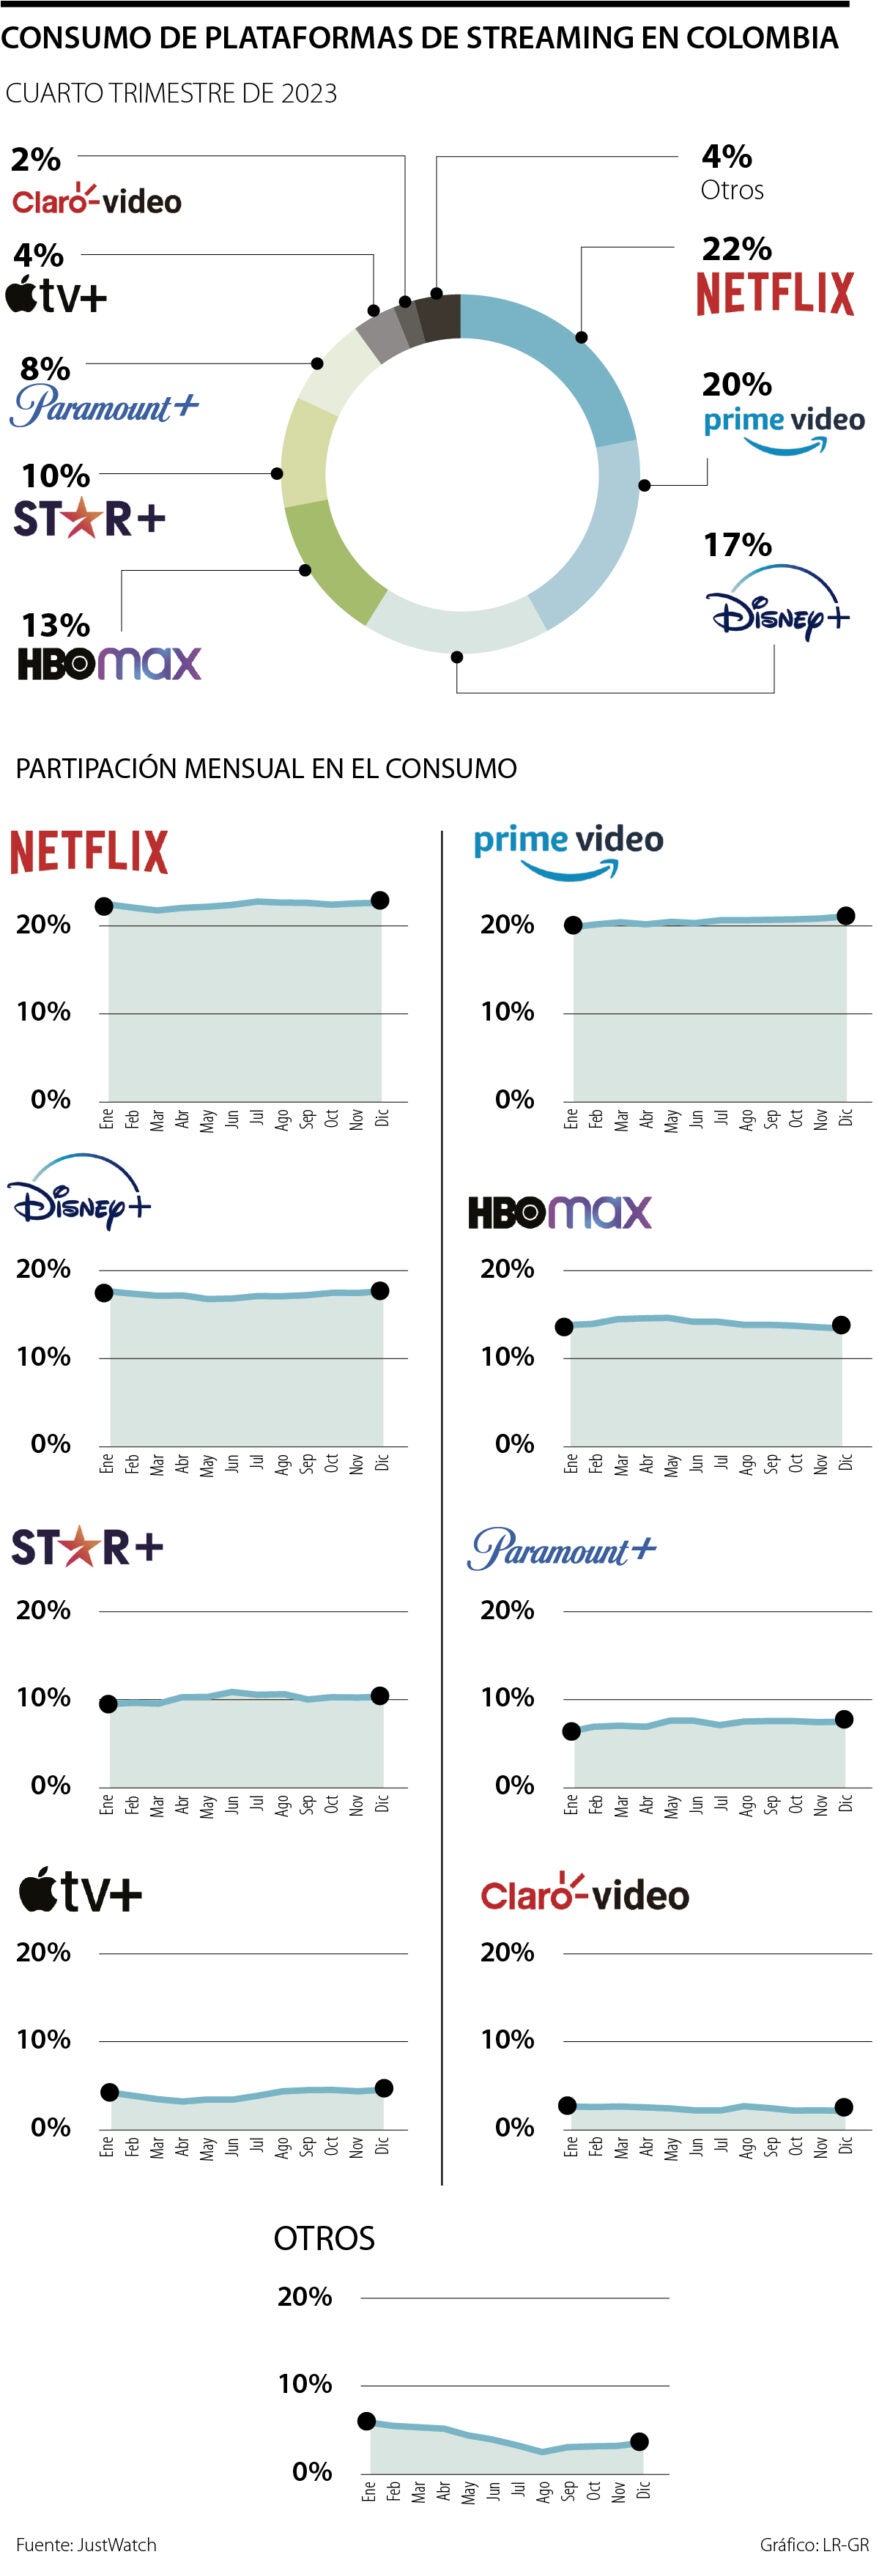 Netflix fue la plataforma de streaming que tuvo mayor consumo en